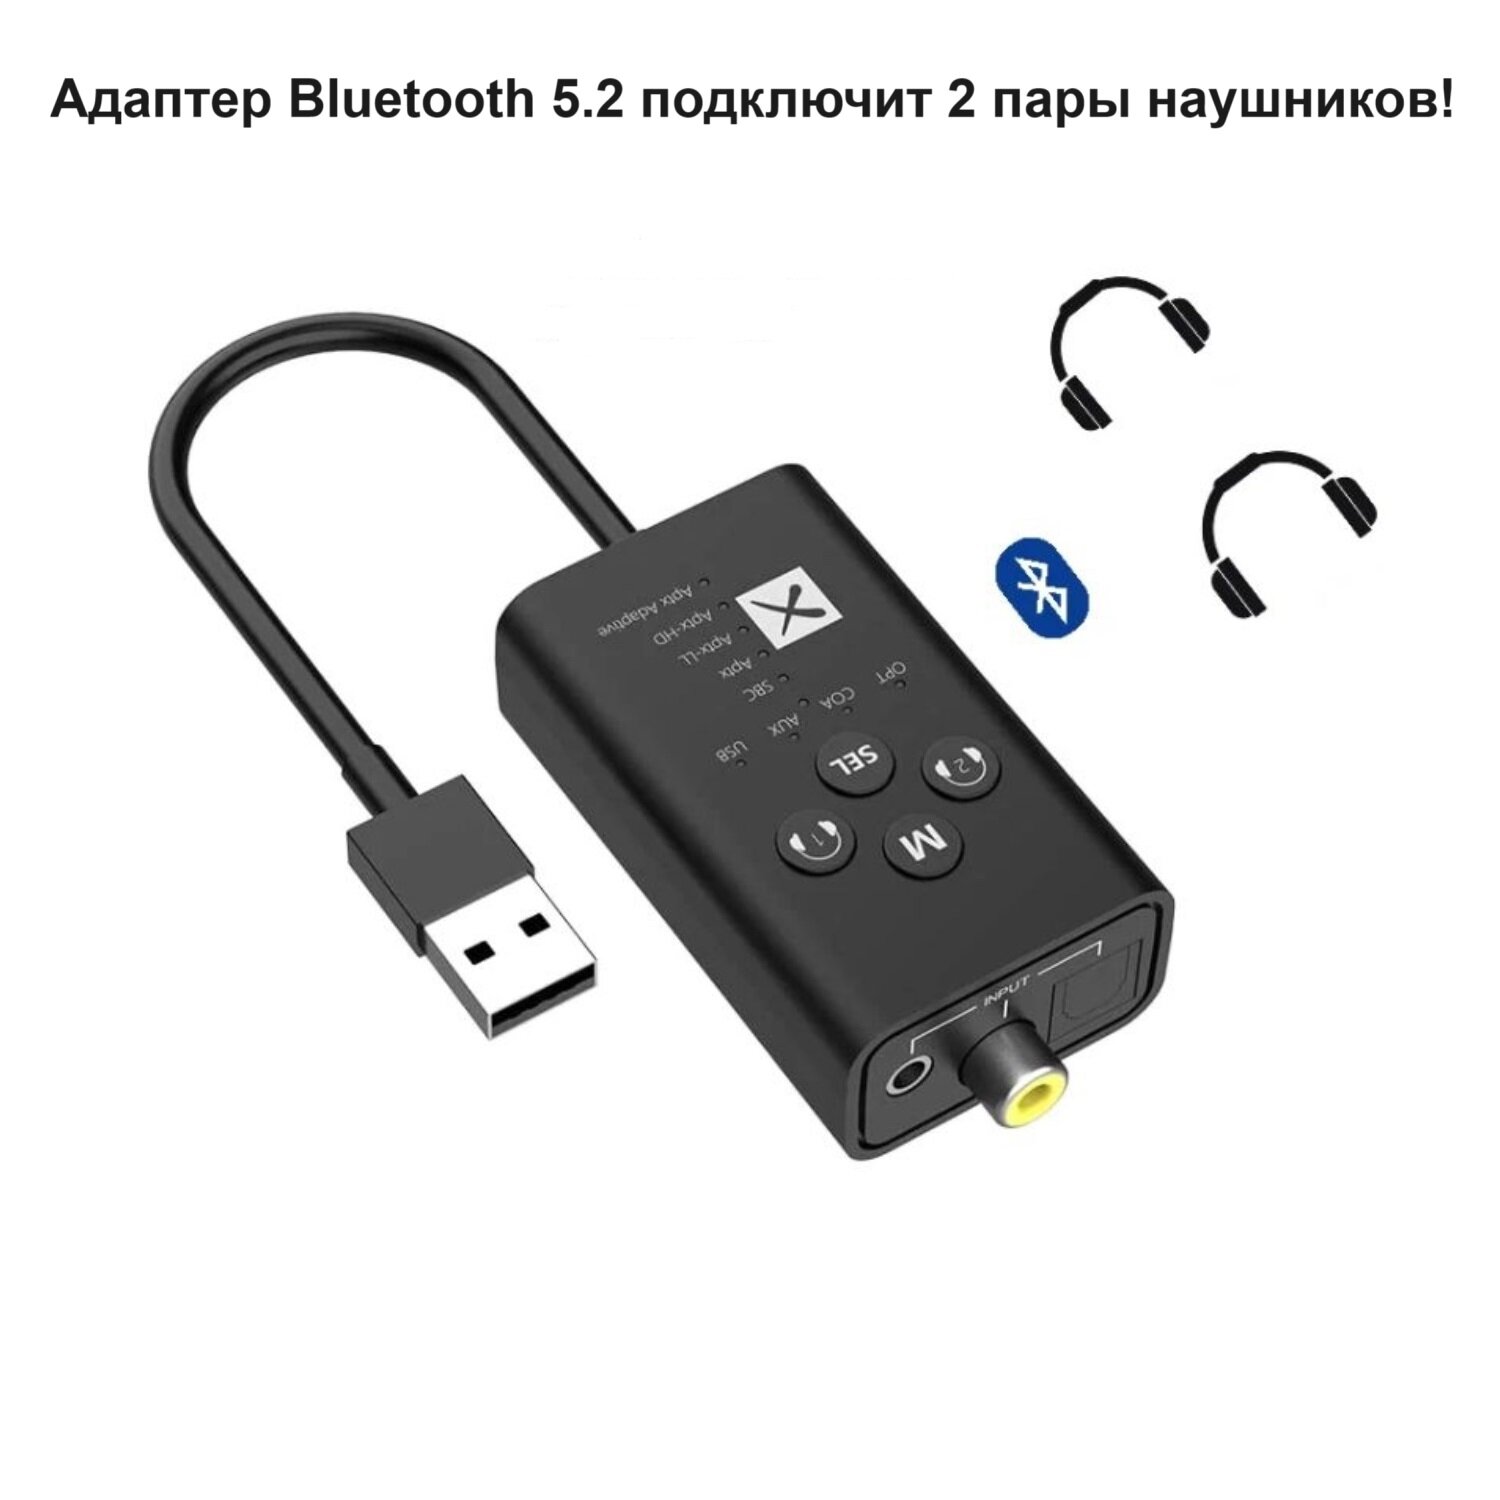 Внешняя звуковая карта USB Bluetooth 5.2 SBC / AptX Adaptive на 2 пары наушников Sellerweb T9